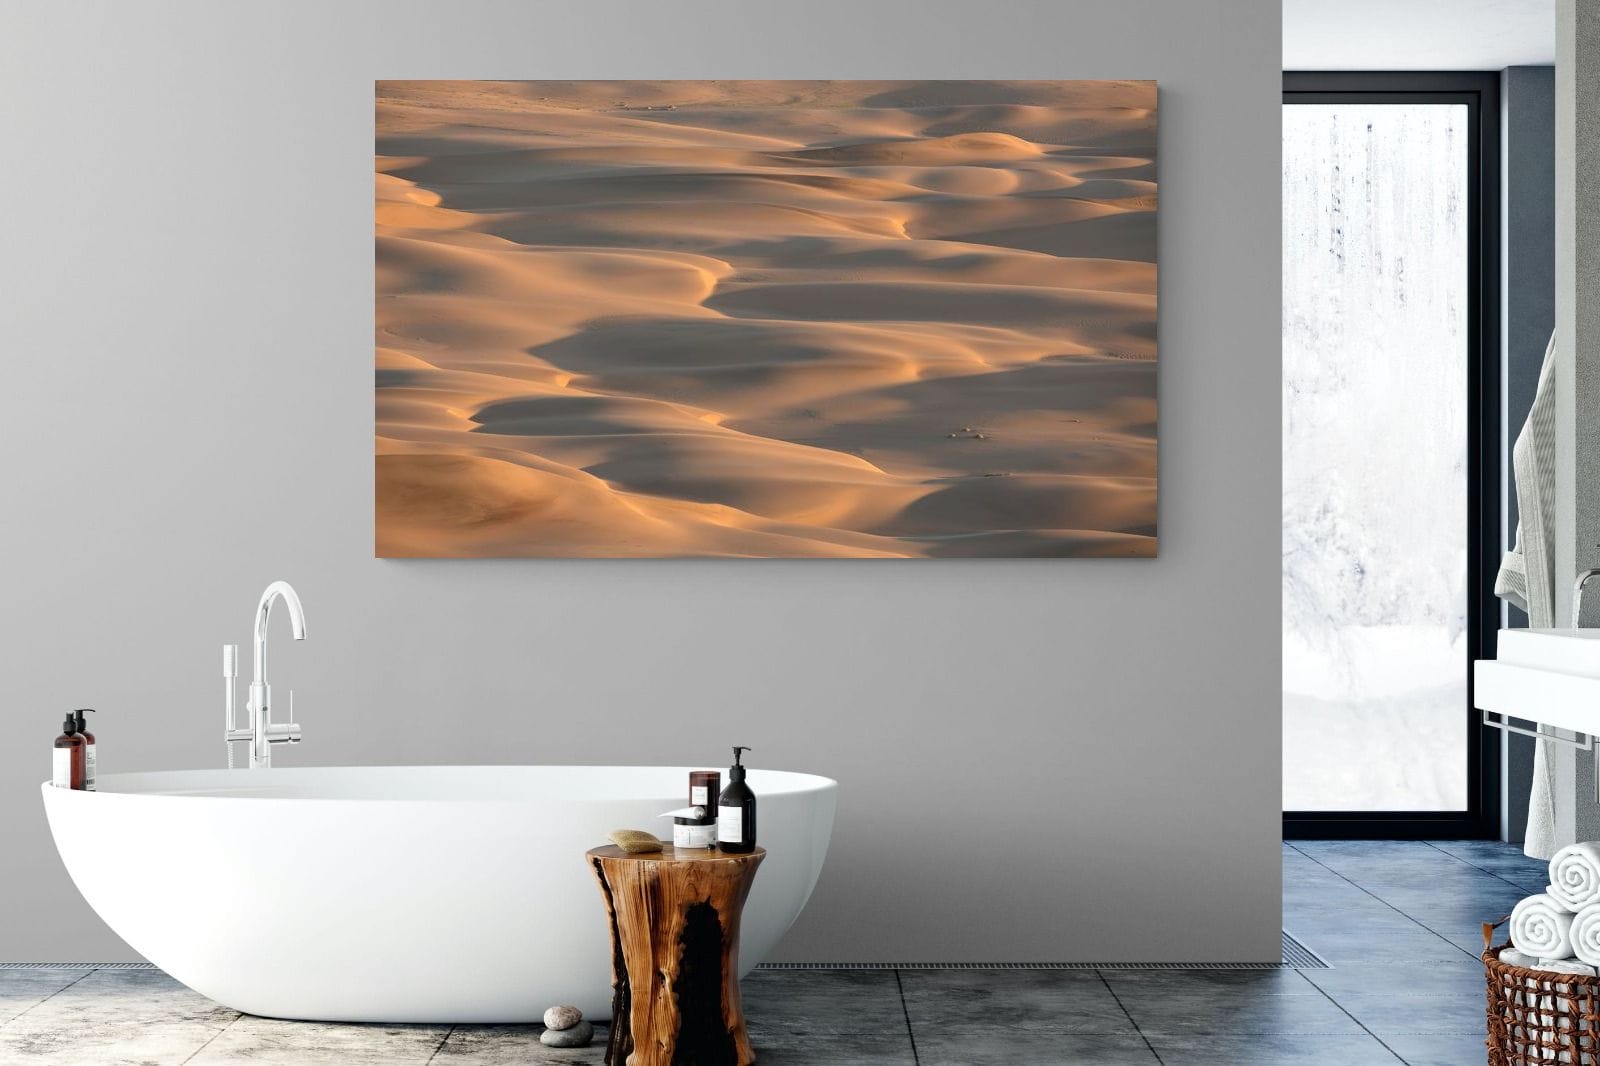 Sand dunes against sky For sale as Framed Prints, Photos, Wall Art